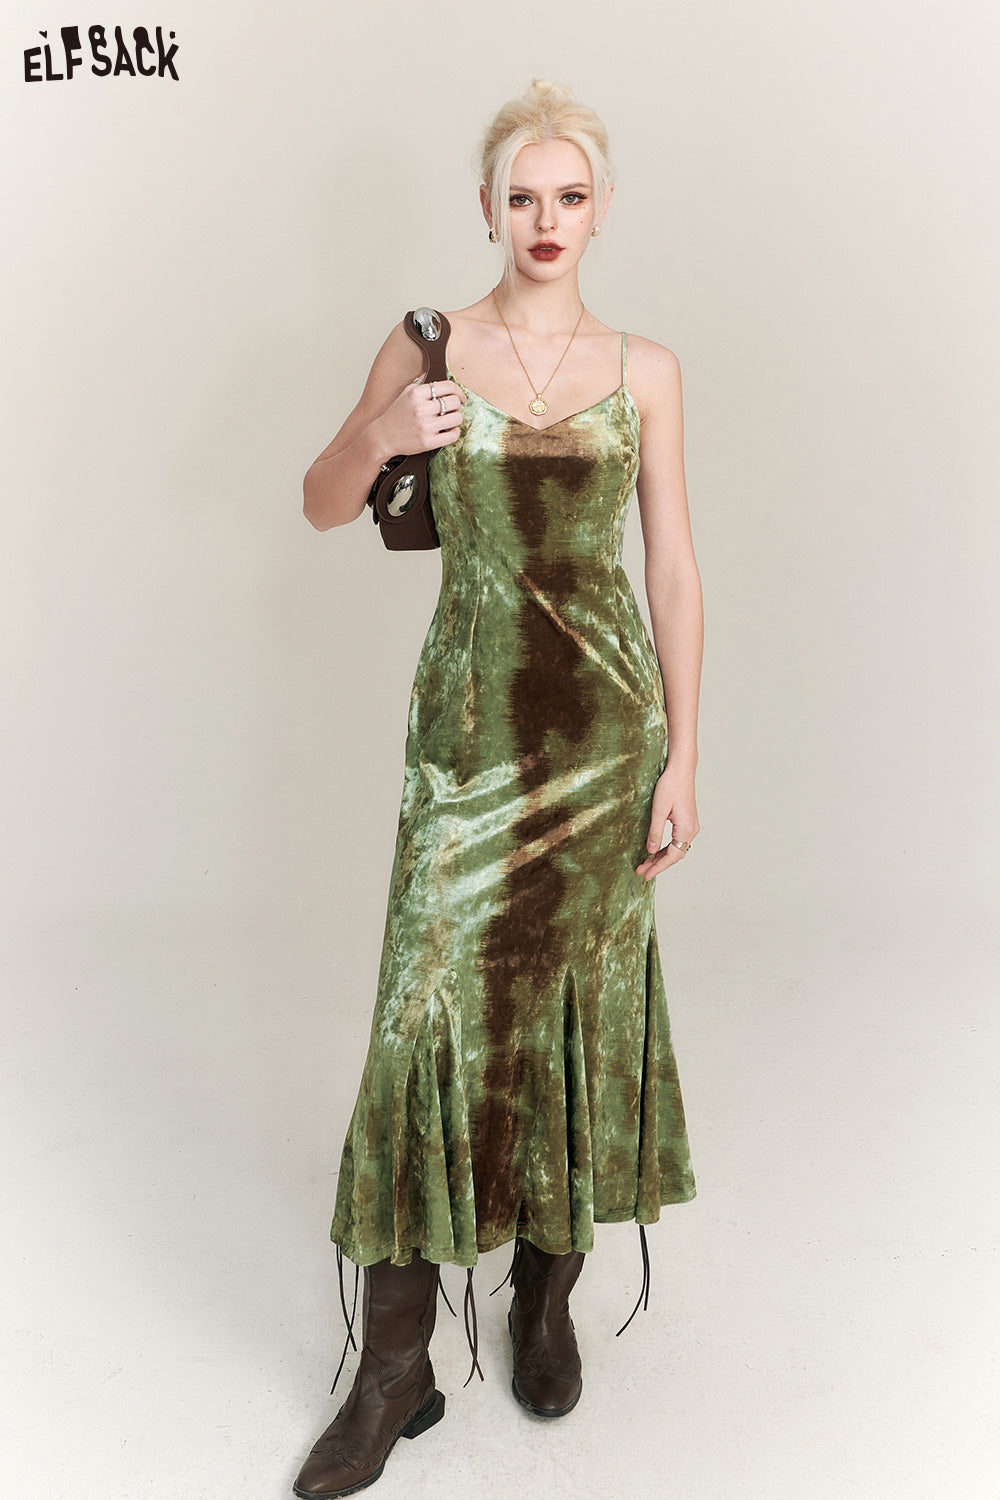 
                  
                    ELFSACK Velvet Graphic Dresses For Party Women 2023 Winter New Sleeveless Chinese Style Dress
                  
                